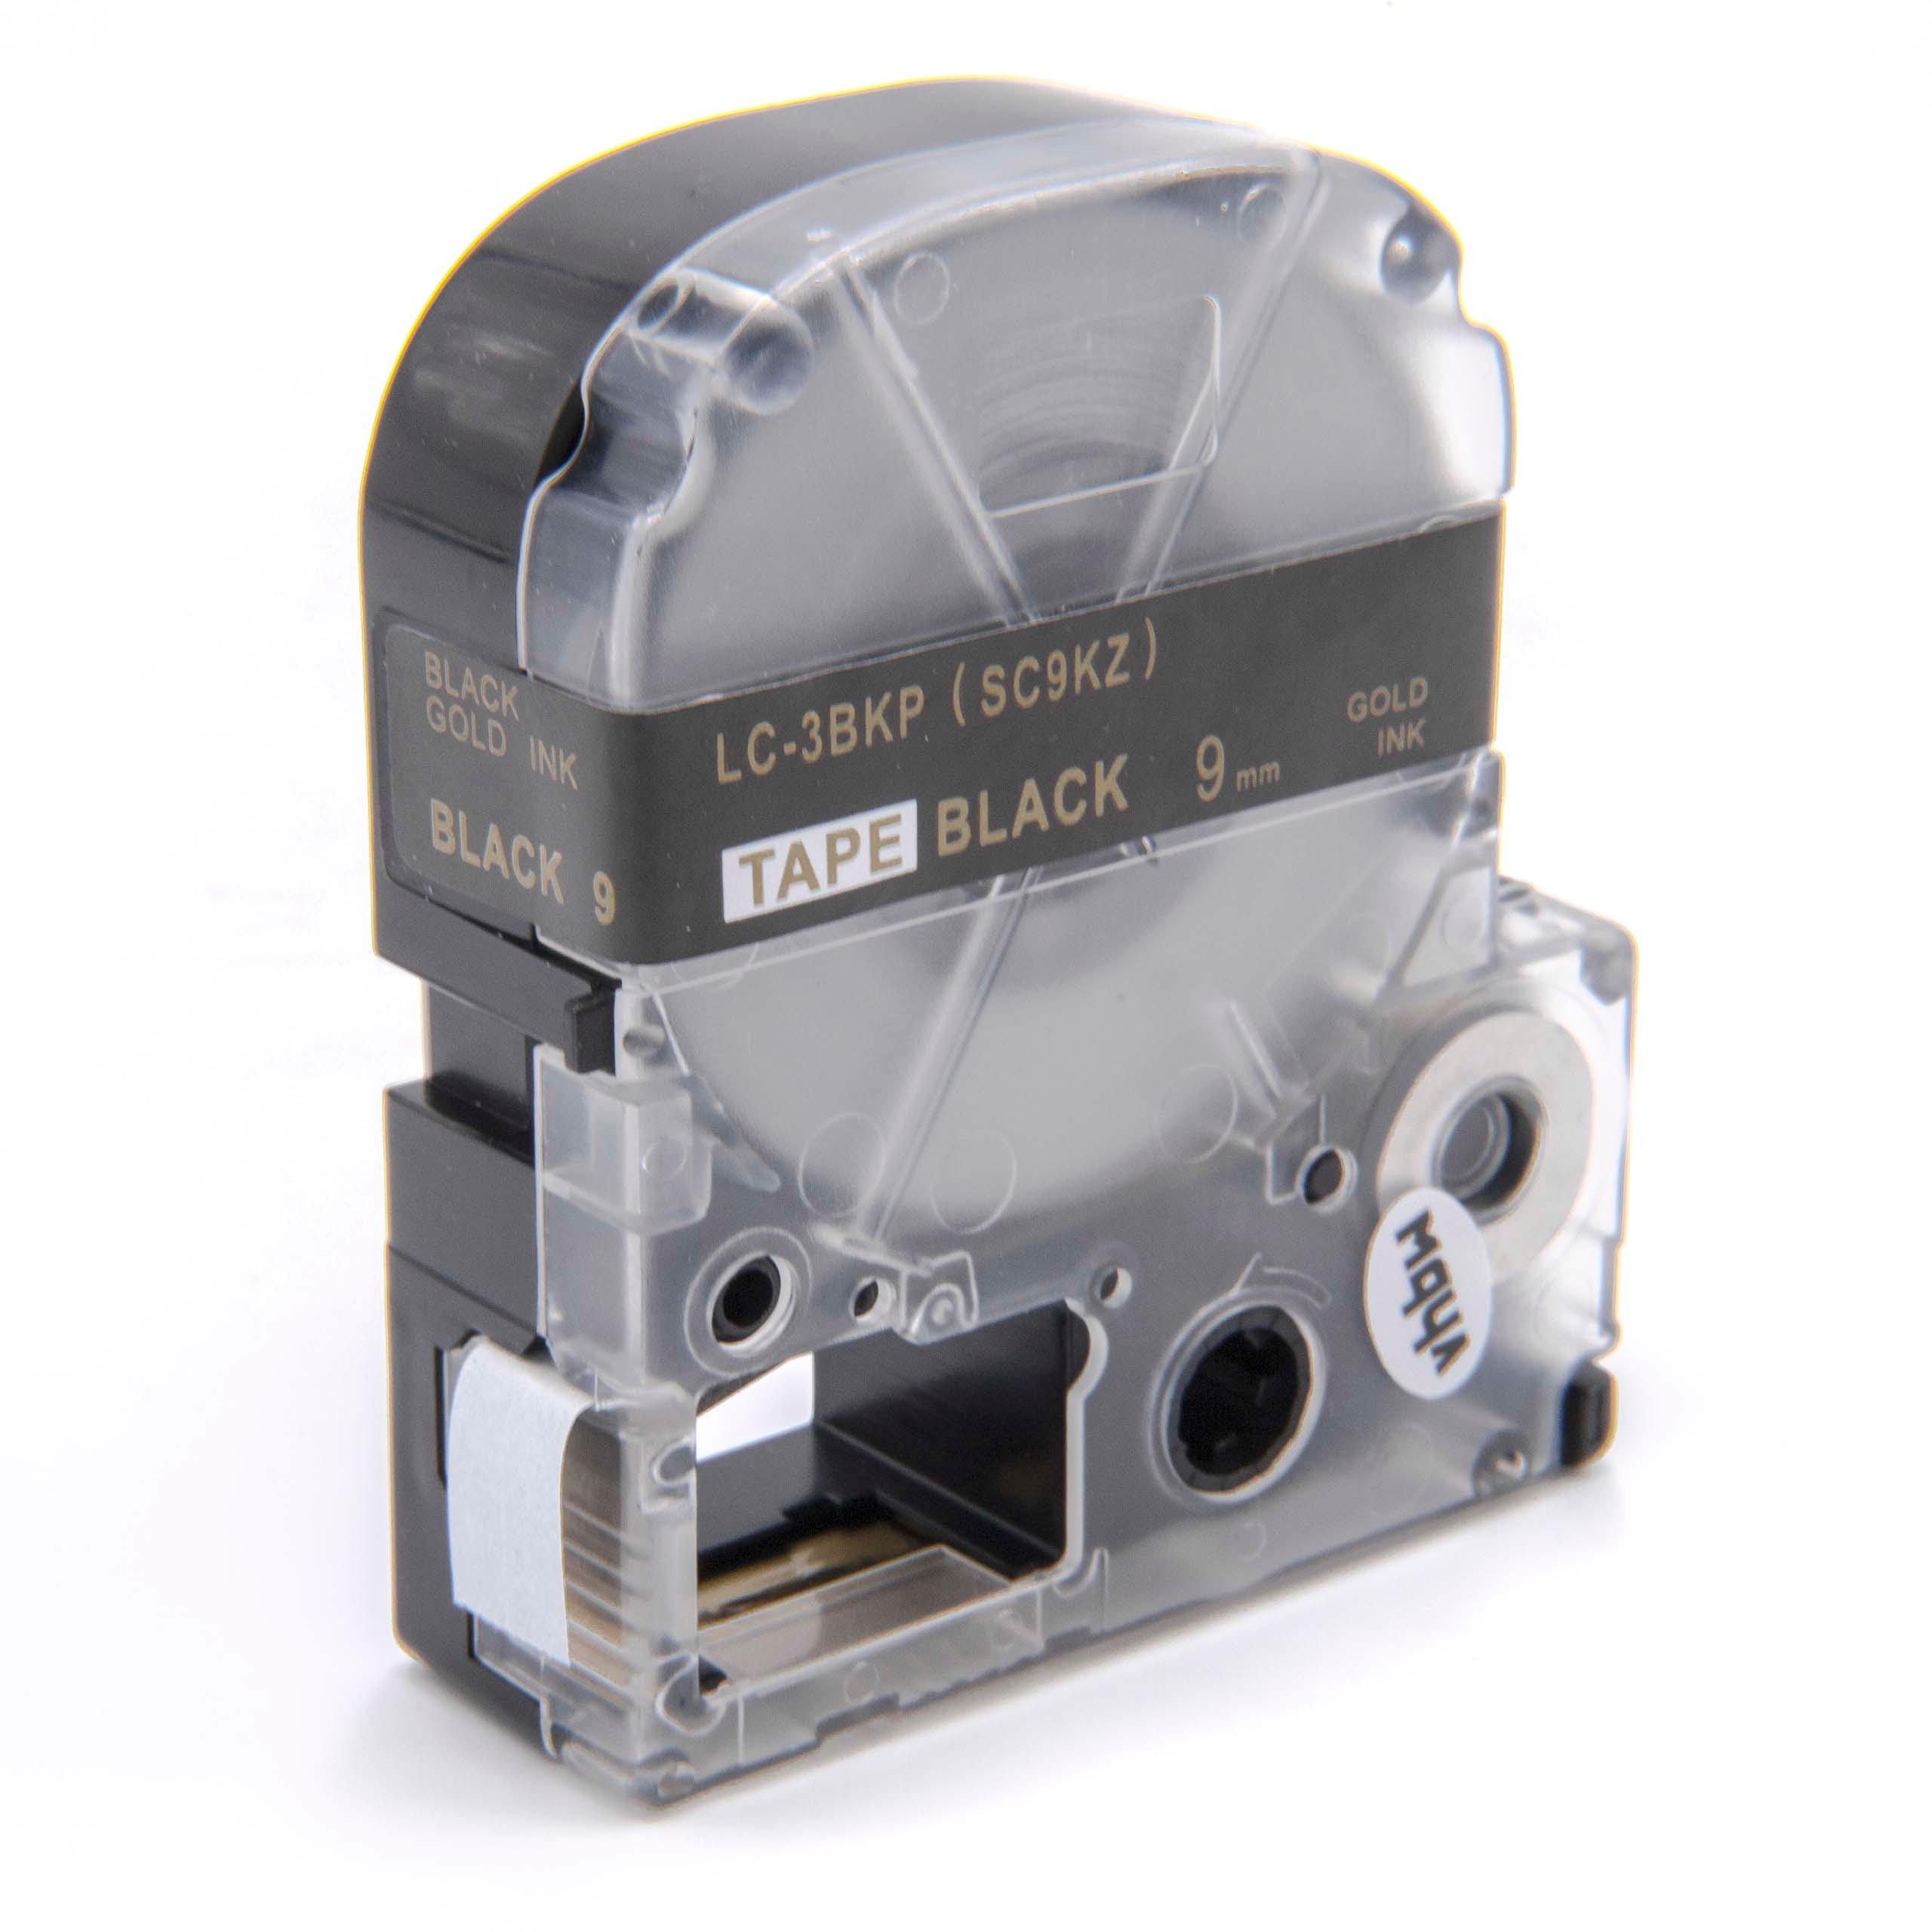 Cassetta nastro sostituisce Epson LC-3BKP per etichettatrice Epson 9mm dorato su nero